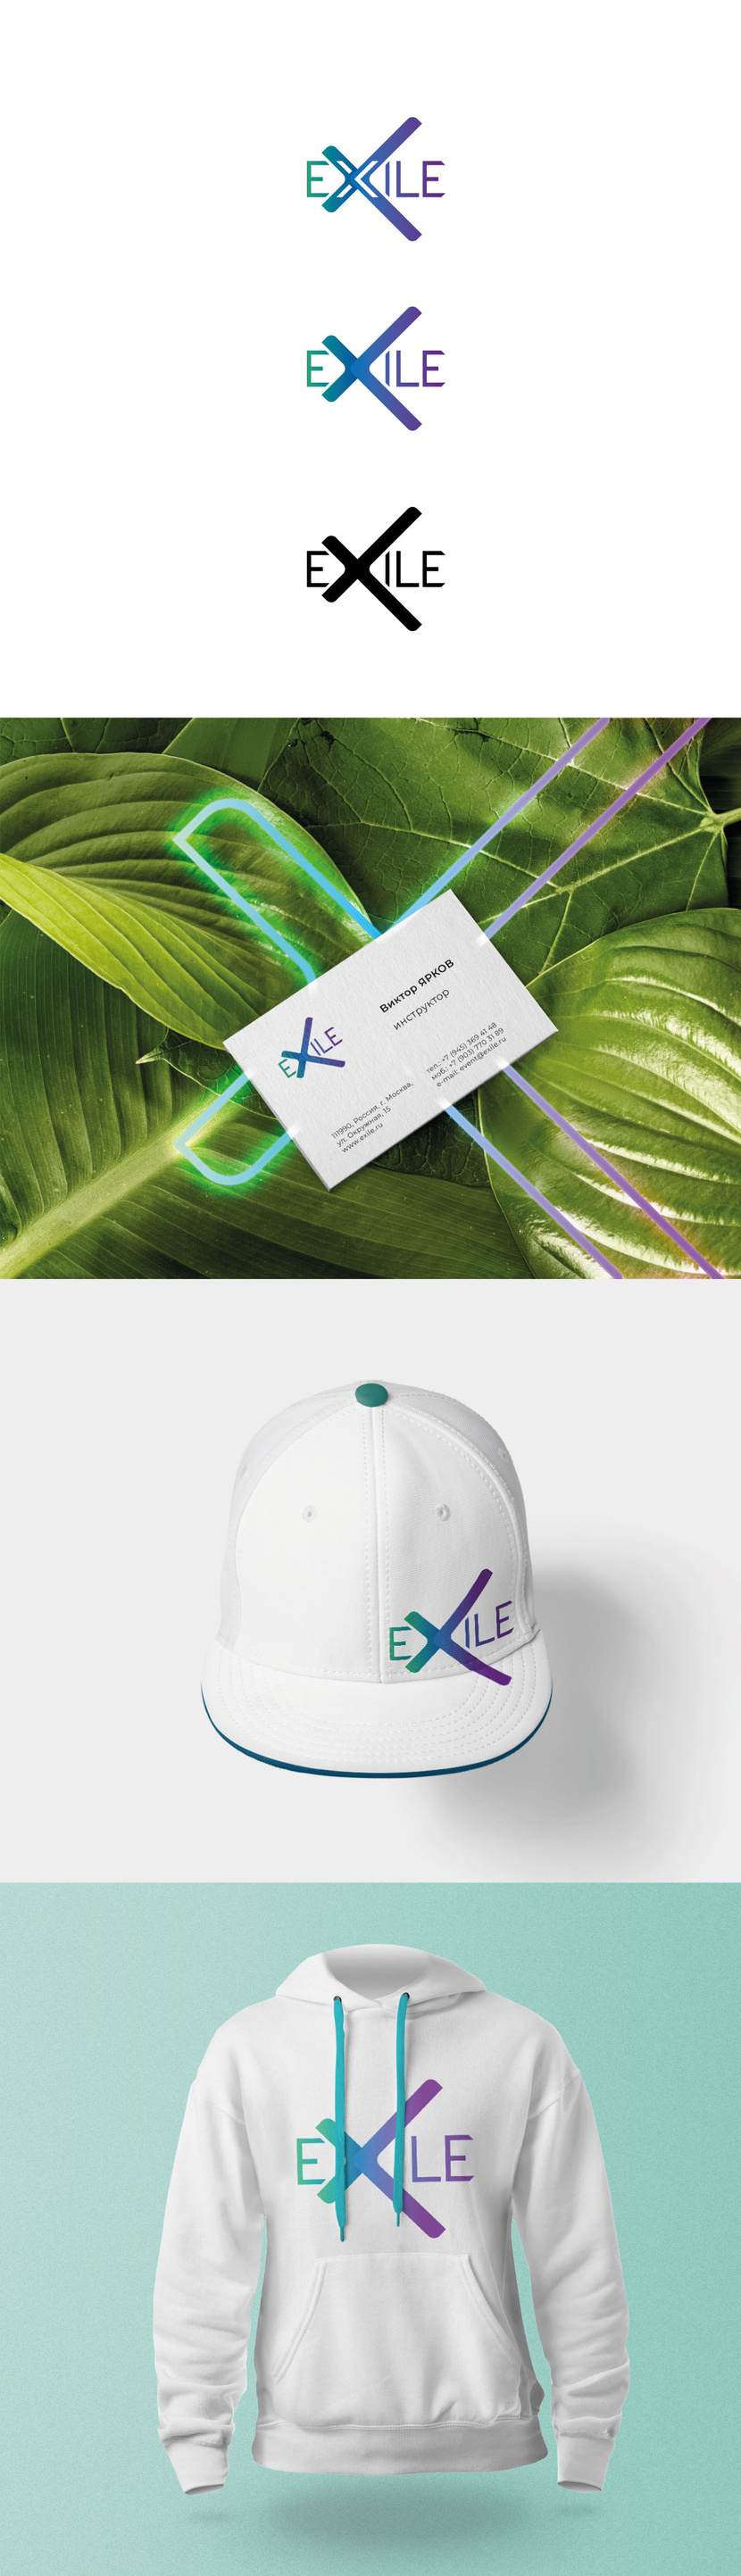 + - Разработка логотипа и фирменного стиля EXILE